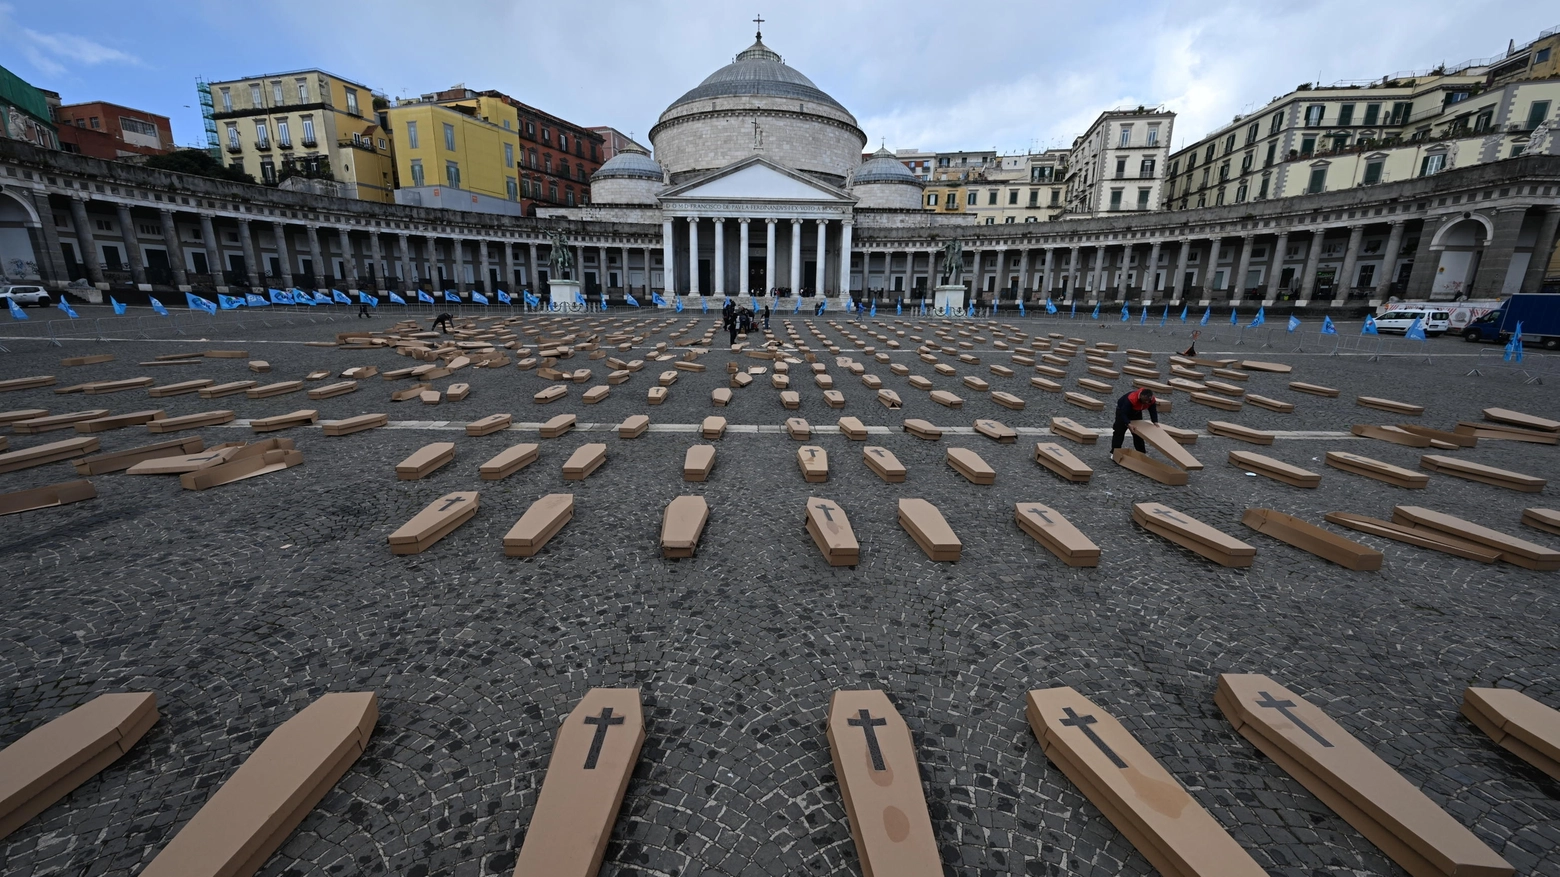 Morti sul lavoro: 500 bare in piazza Plebiscito a Napoli